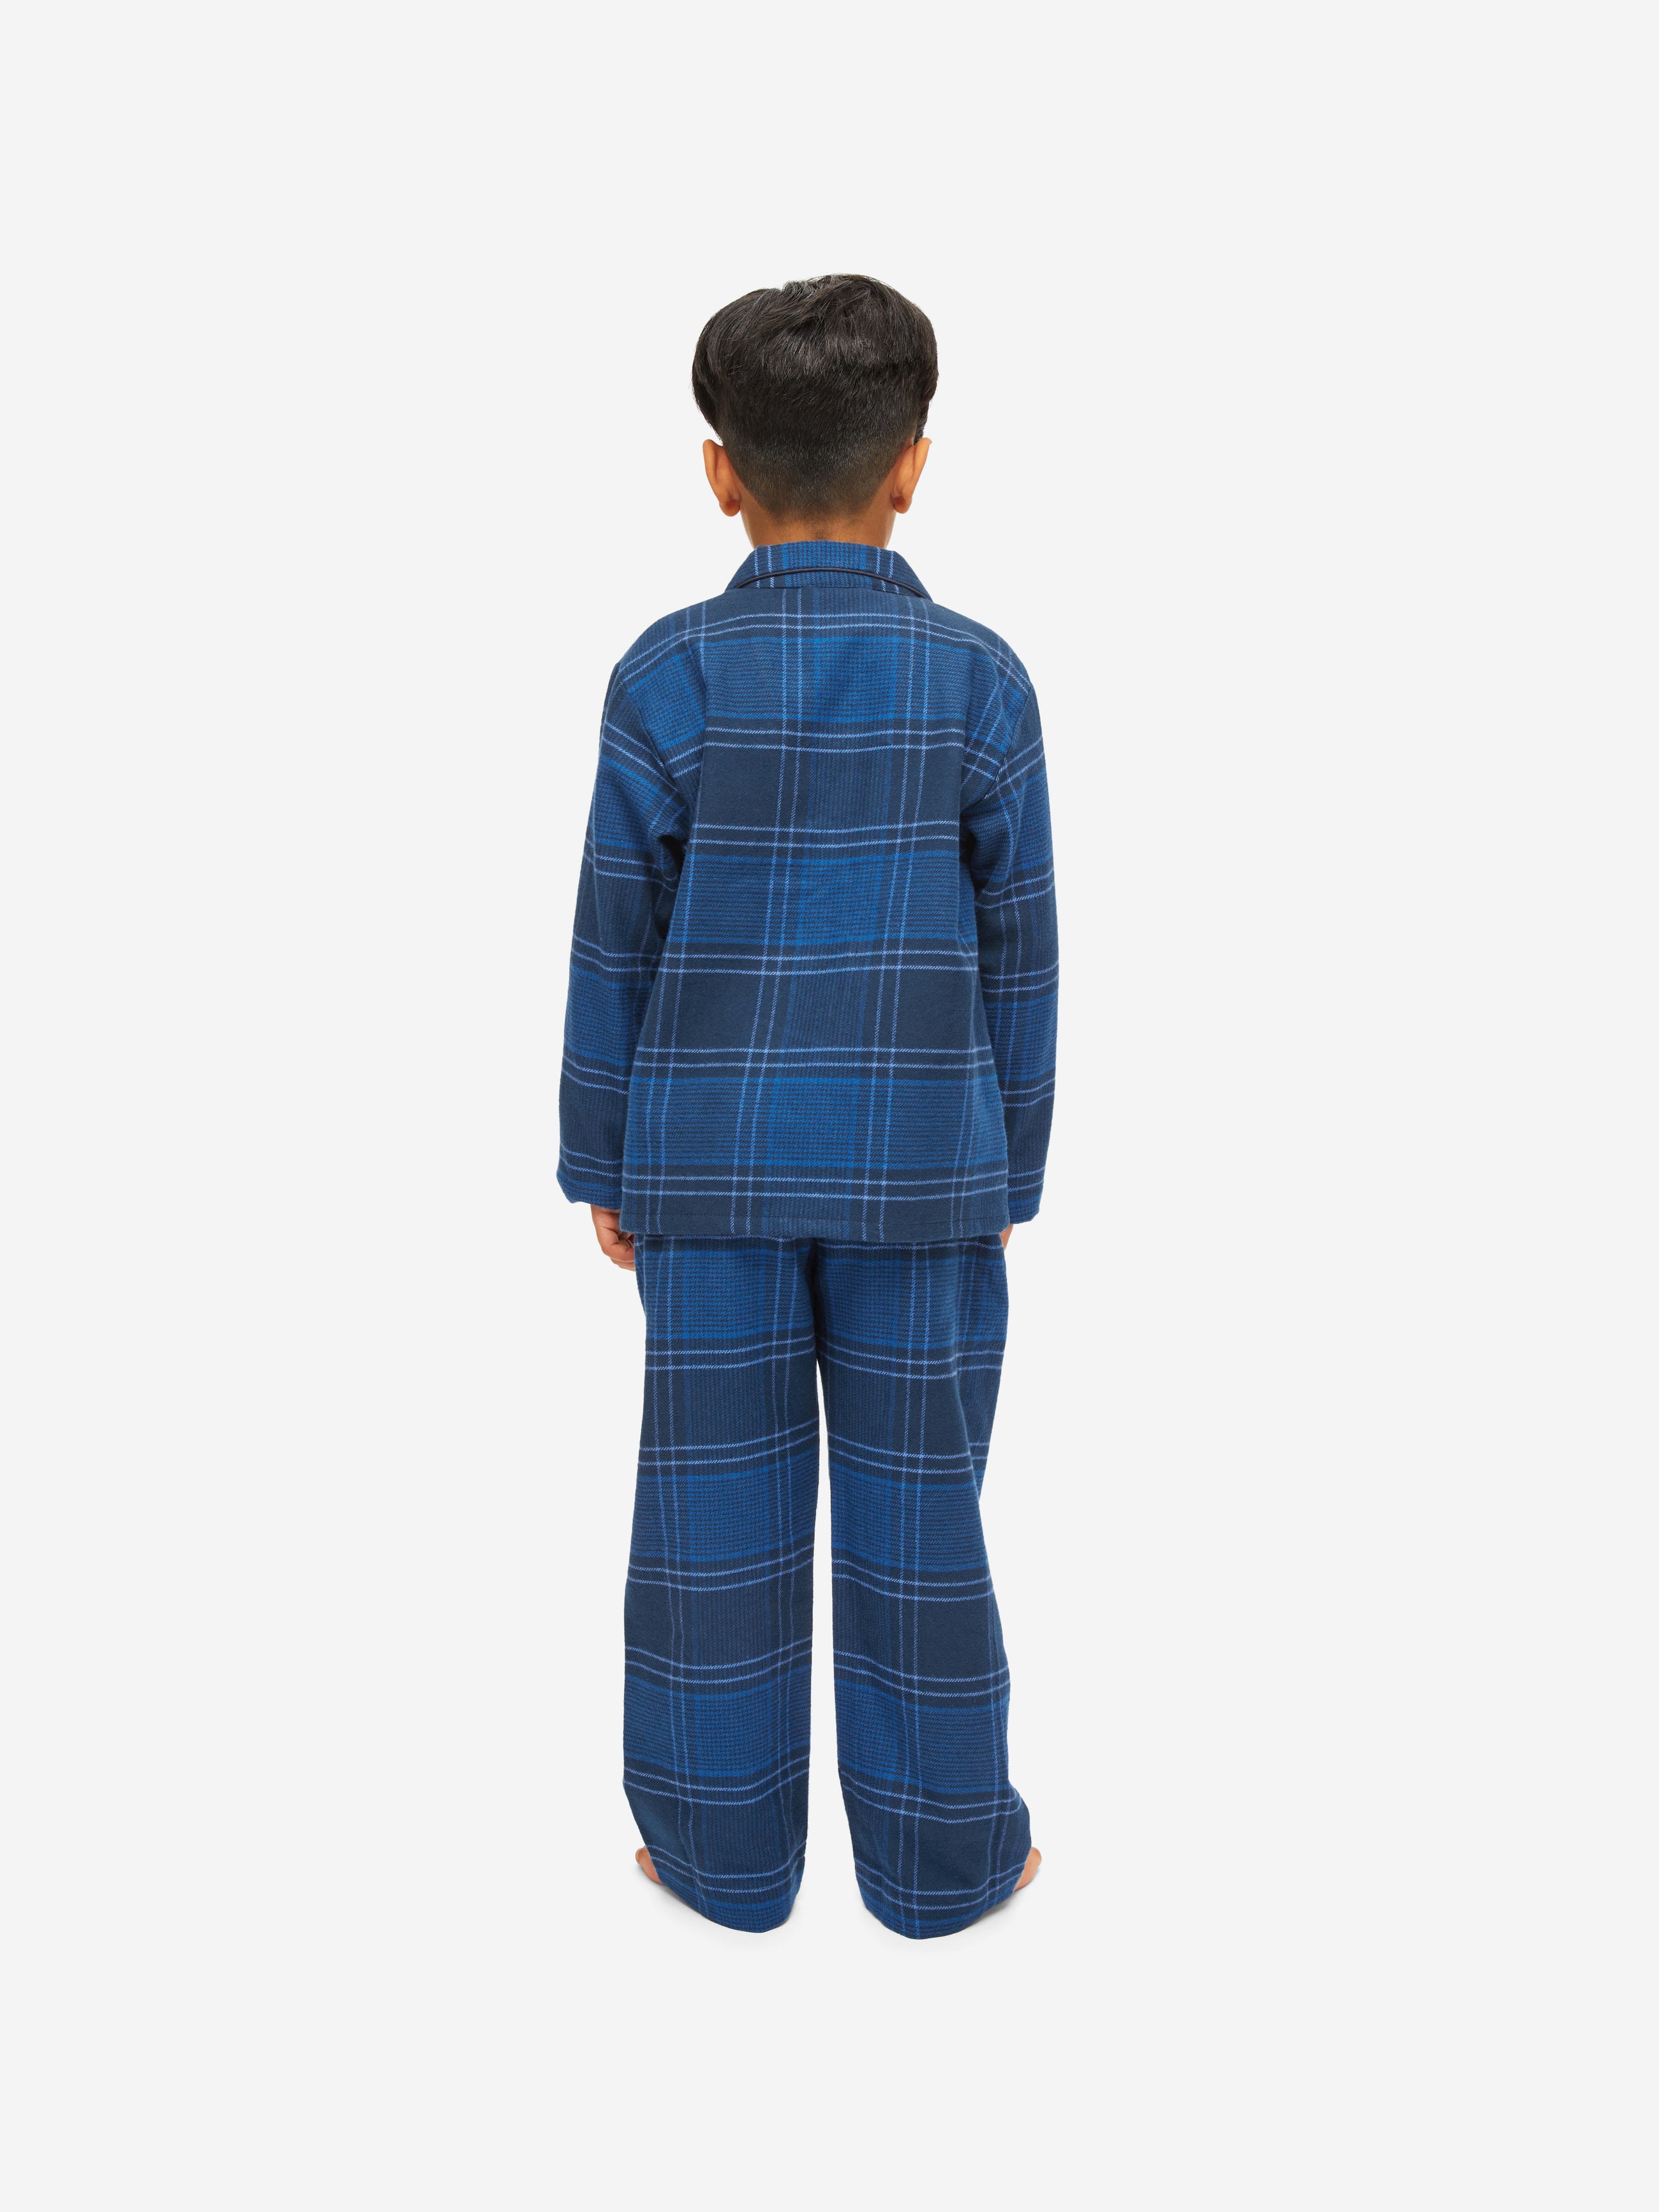 Kids' Pyjamas Kelburn 27 Brushed Cotton Navy